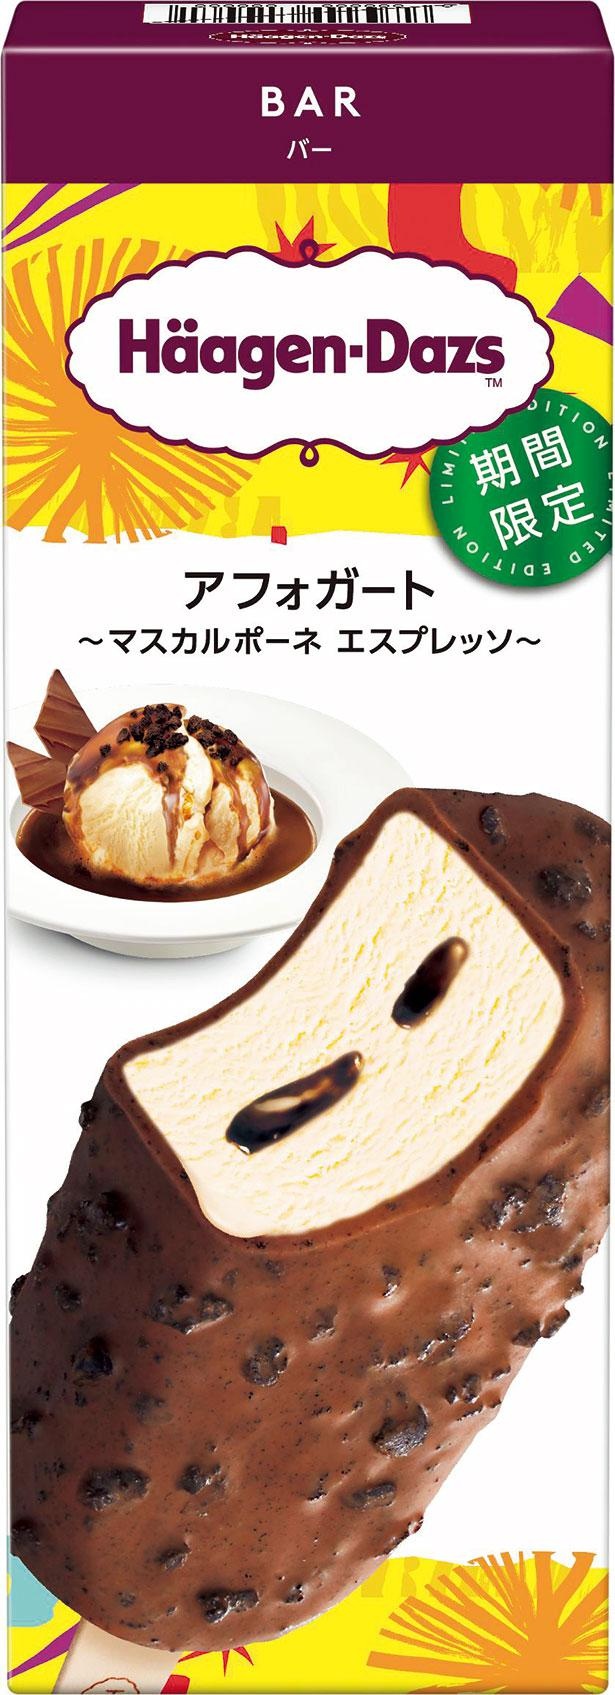 イタリア発祥のスイーツ・アフォガートをアイスクリームバーで表現。コーティングのチョコレートにはチョコレートクッキーがちりばめられている